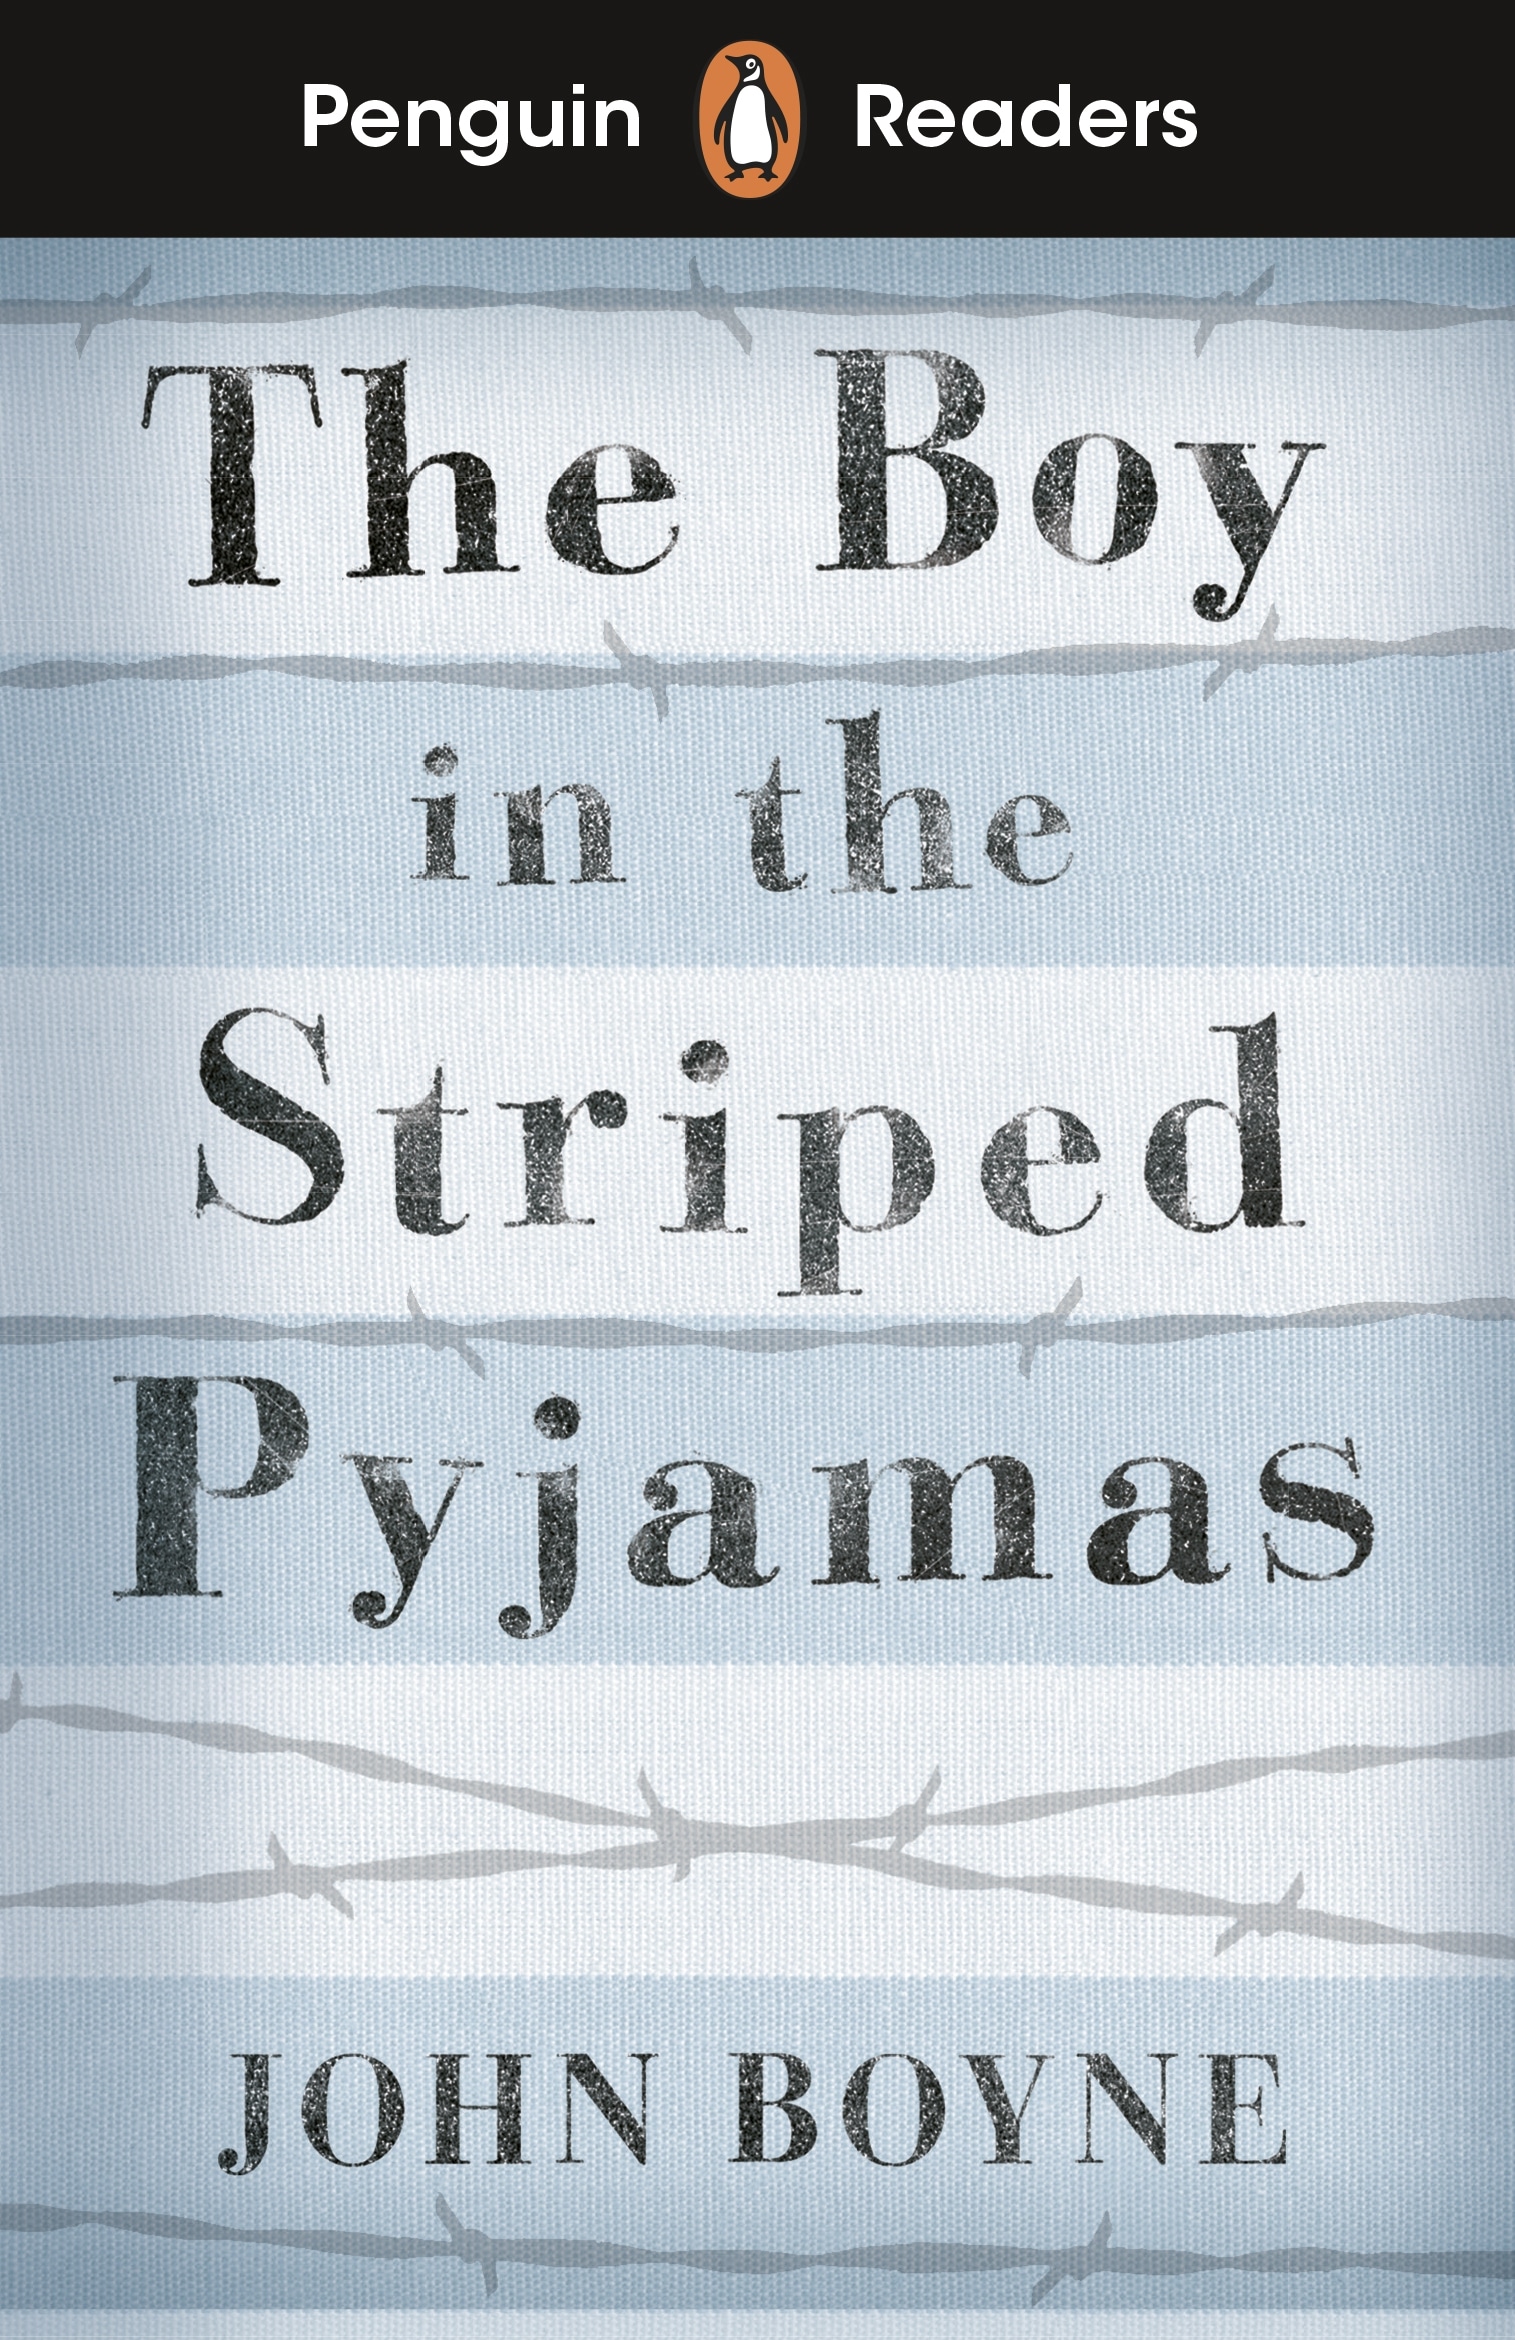 Book “Penguin Readers Level 4: The Boy in Striped Pyjamas (ELT Graded Reader)” by John Boyne — November 5, 2020